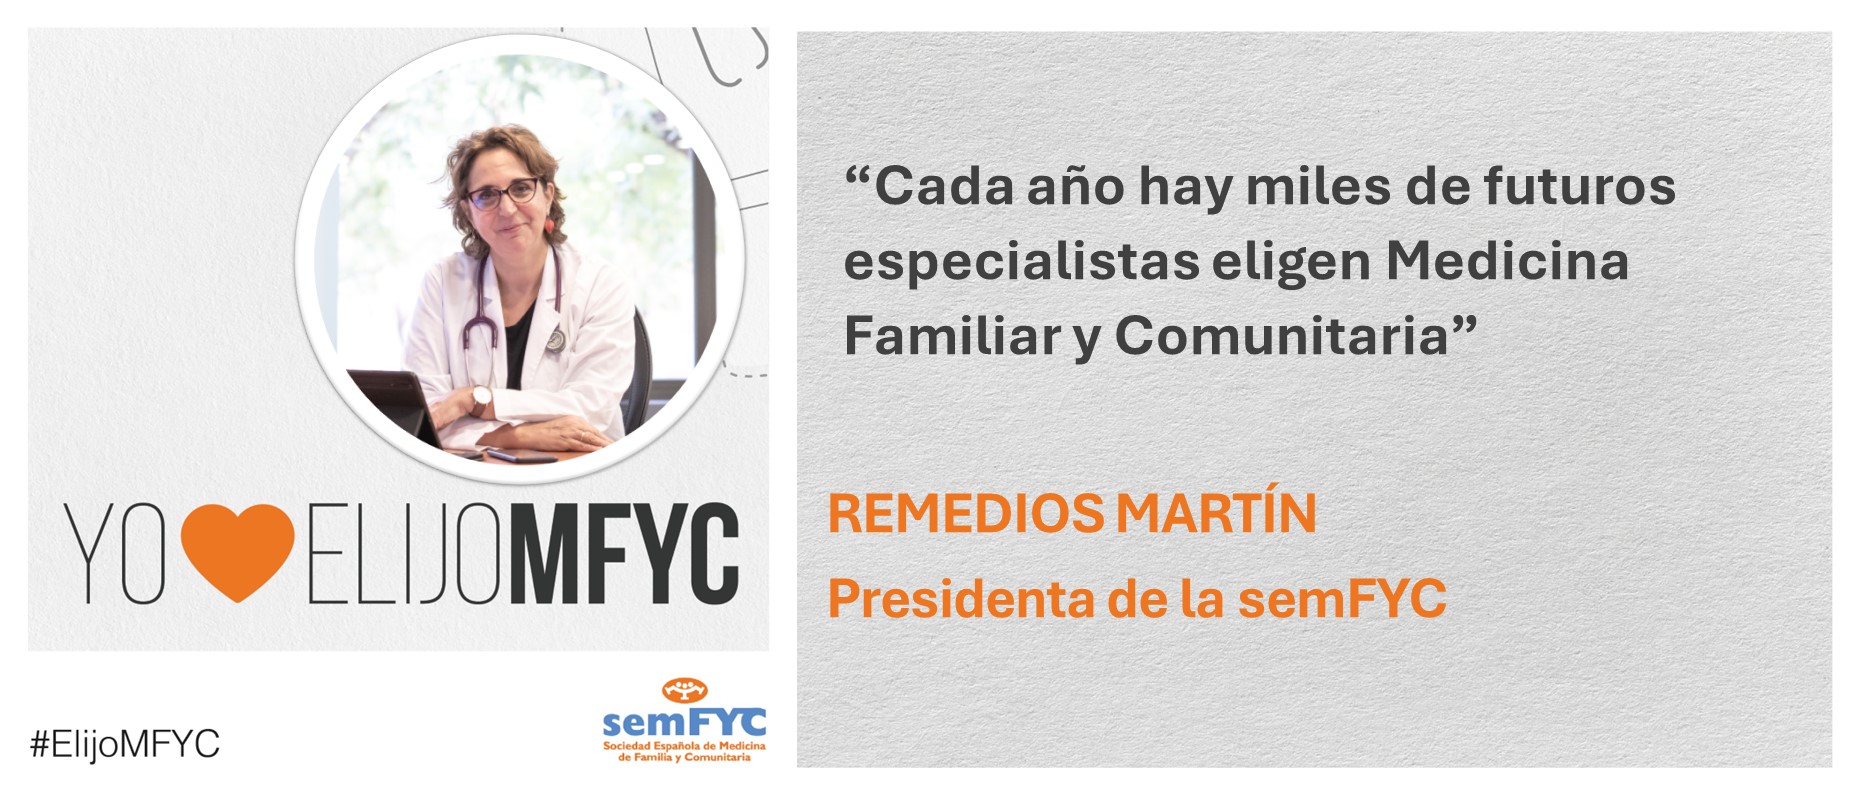 Remedios Martín: “Cada año hay miles de futuros especialistas que eligen Medicina Familiar y Comunitaria”